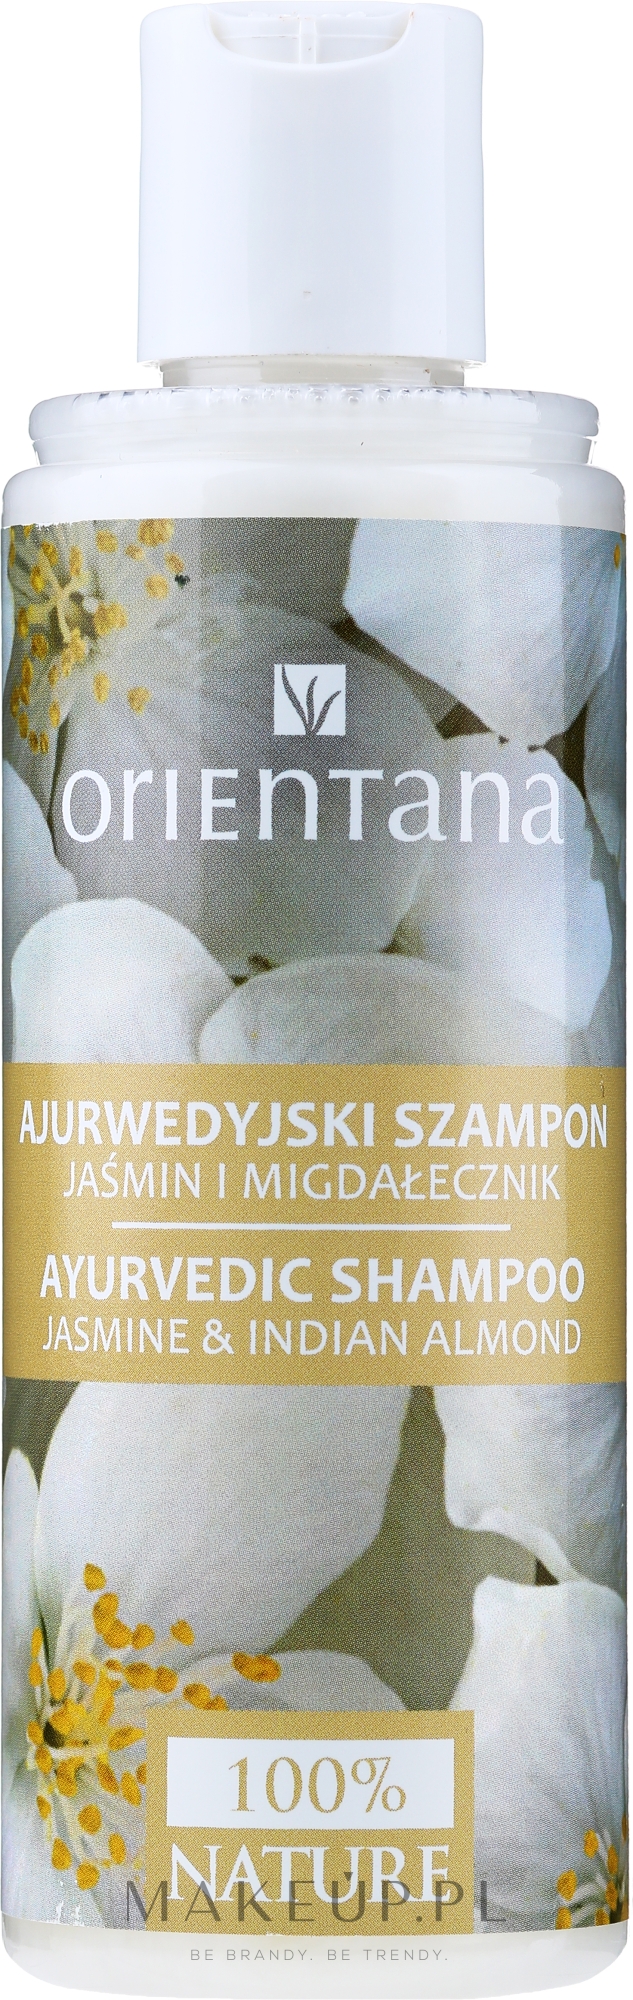 orientana ajurwedyjski szampon do włosów